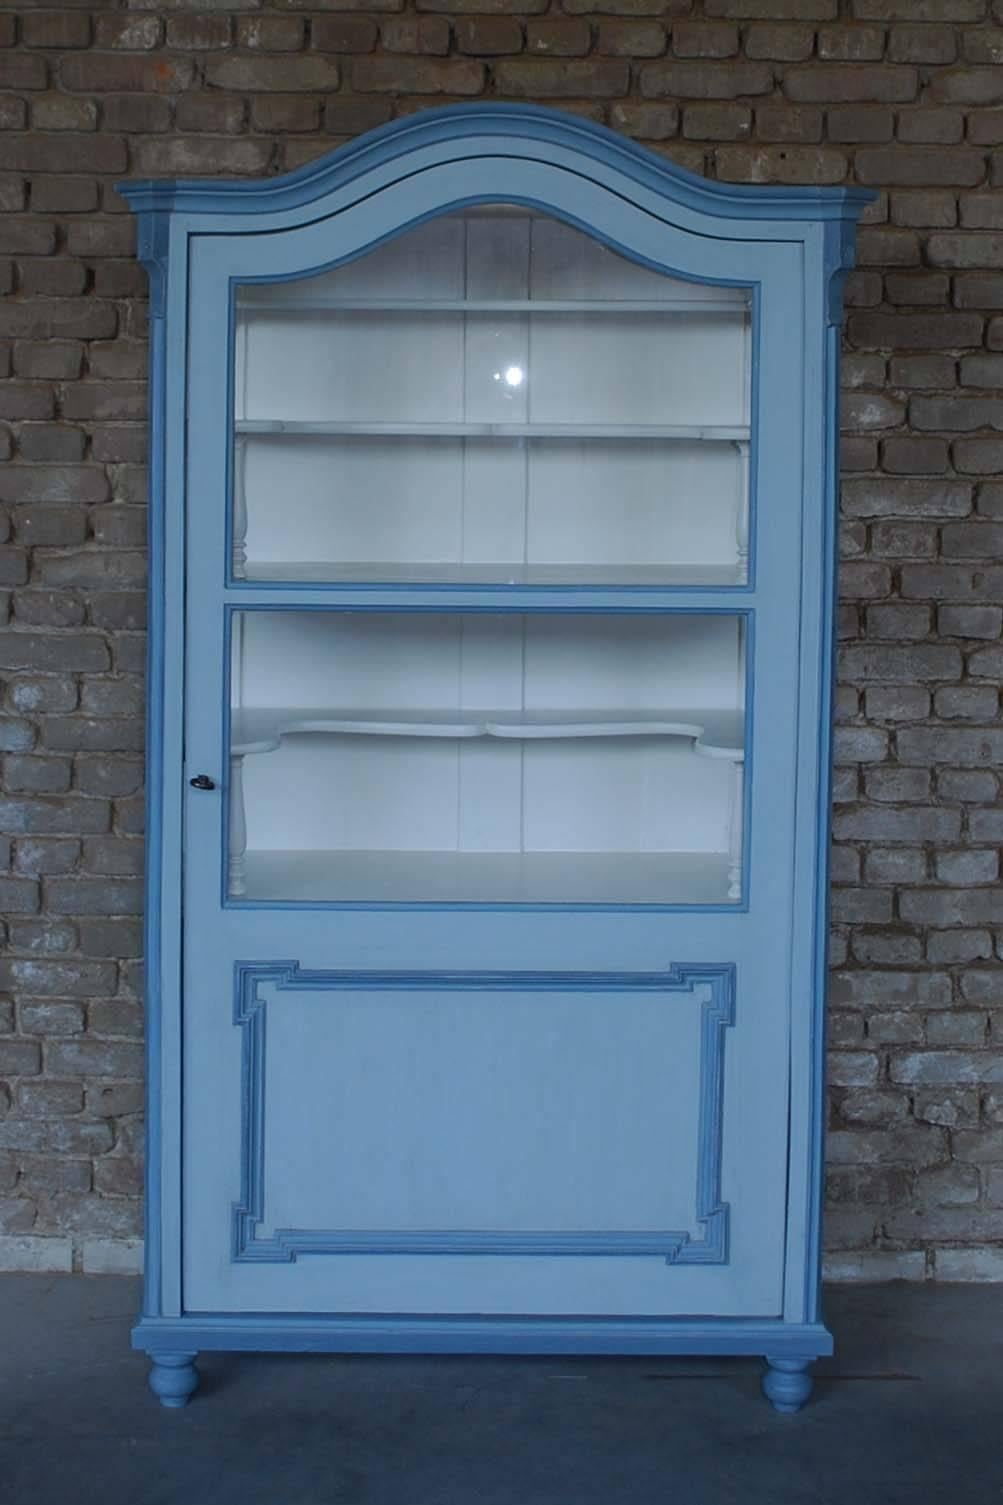 vitrine ou armoire française du 19e siècle de style Louis XV.
Il s'agit d'une vitrine originale fabriquée en pin massif et en placage.
Il a été soigneusement restauré et peint dans une couleur de base gris clair avec des reflets bleus.
Il